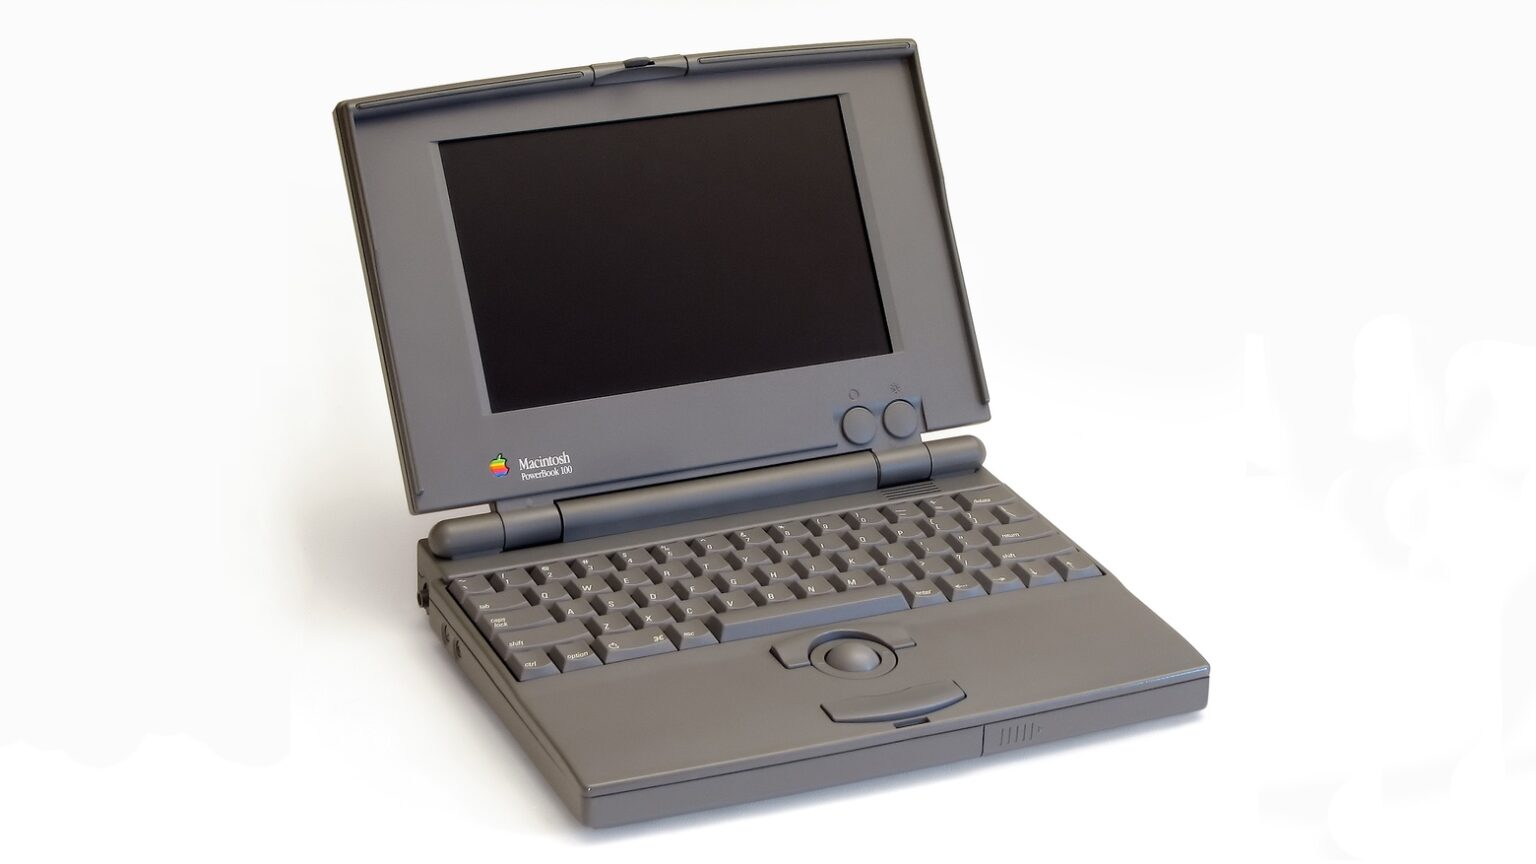 Apple's original PowerBook laptop is an overlooked work of genius